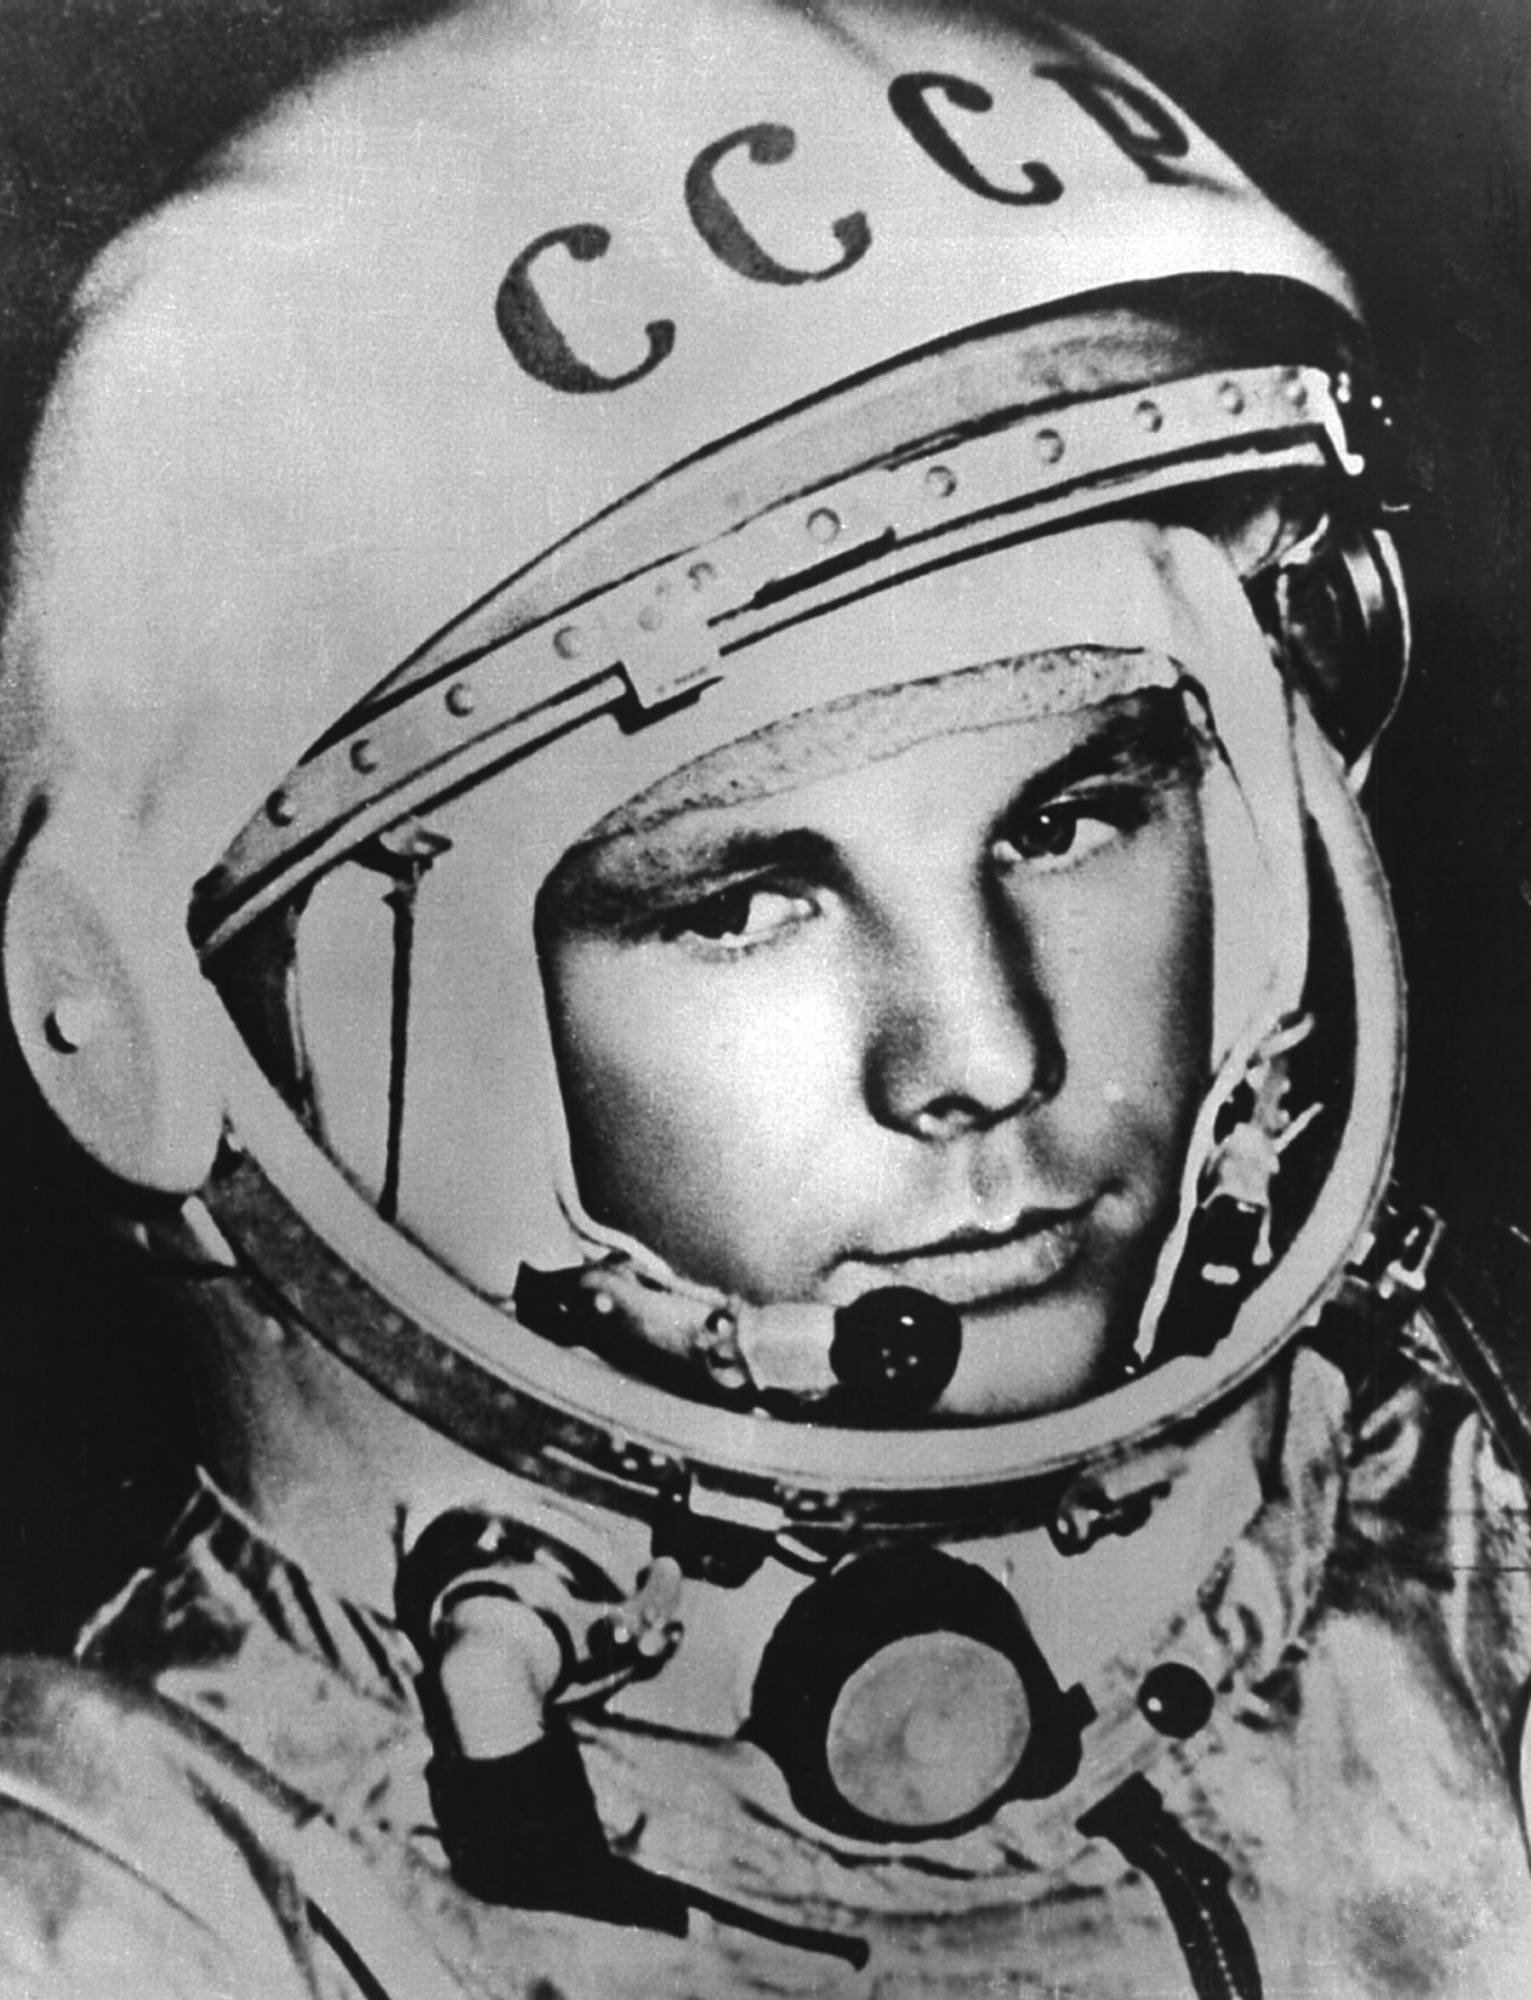 Первый человек в космосе: кино, мероприятия и твиттер-событие в честь Юрия Гагарина